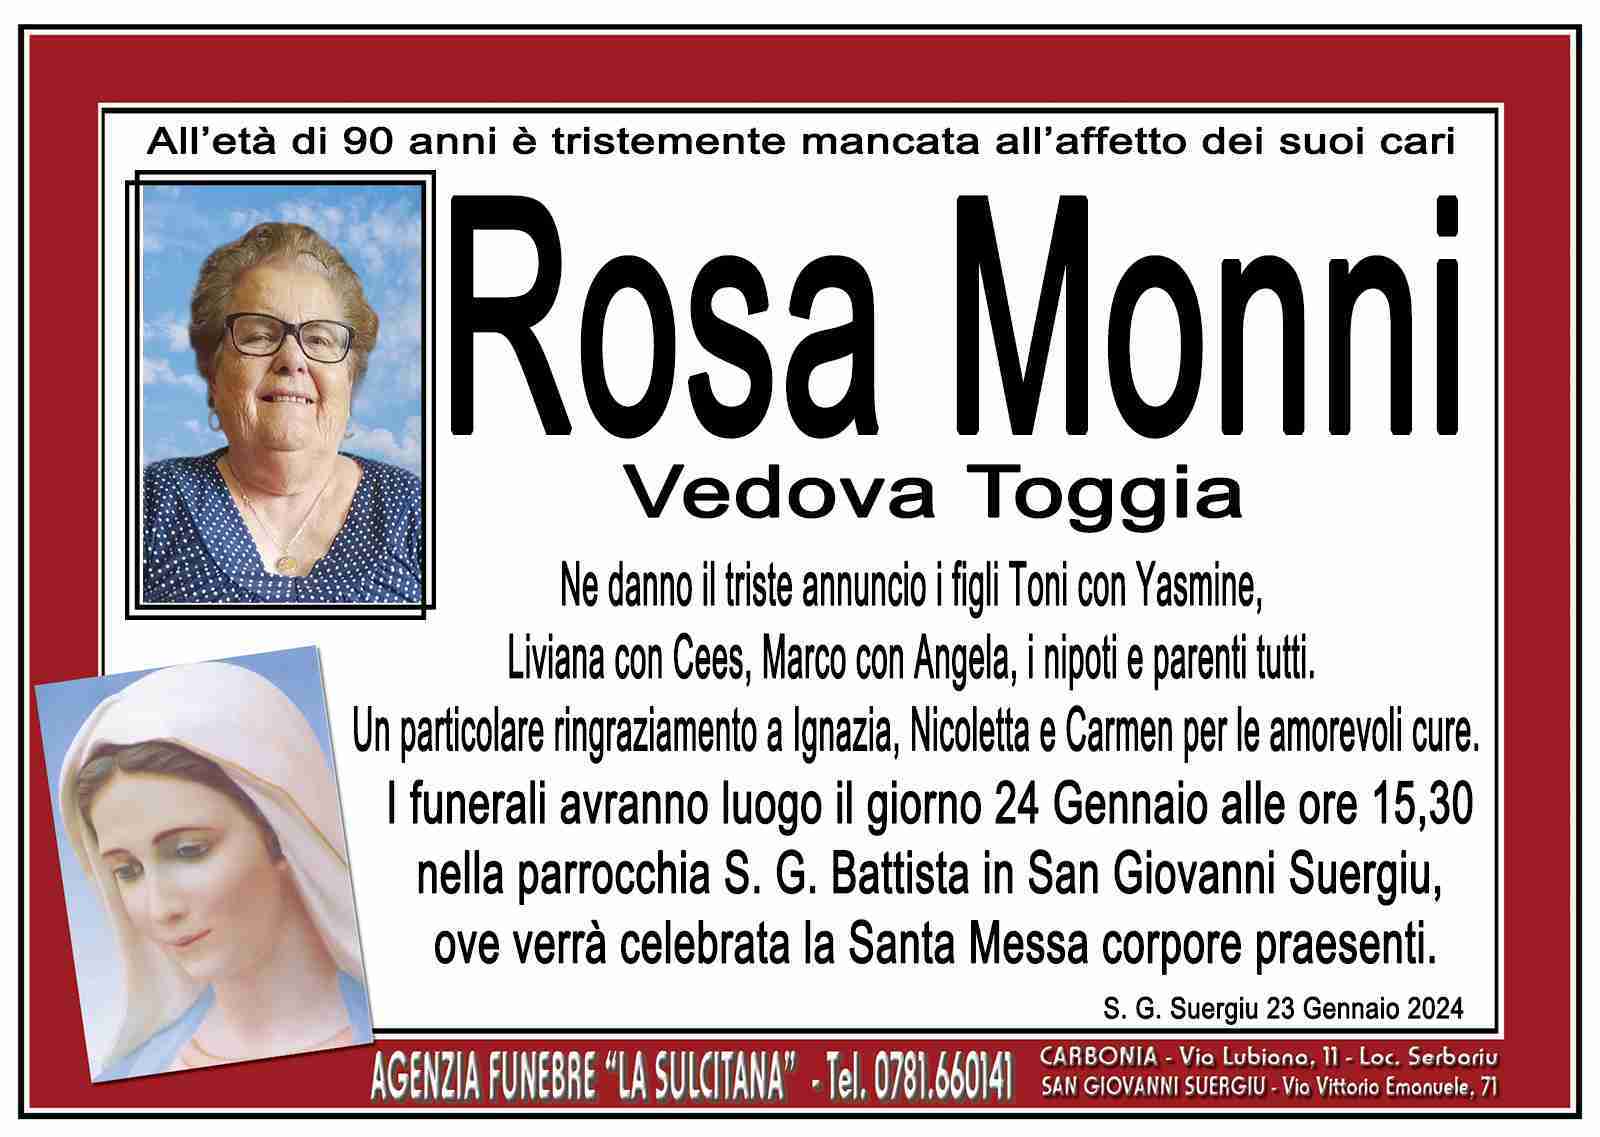 Rosa Monni